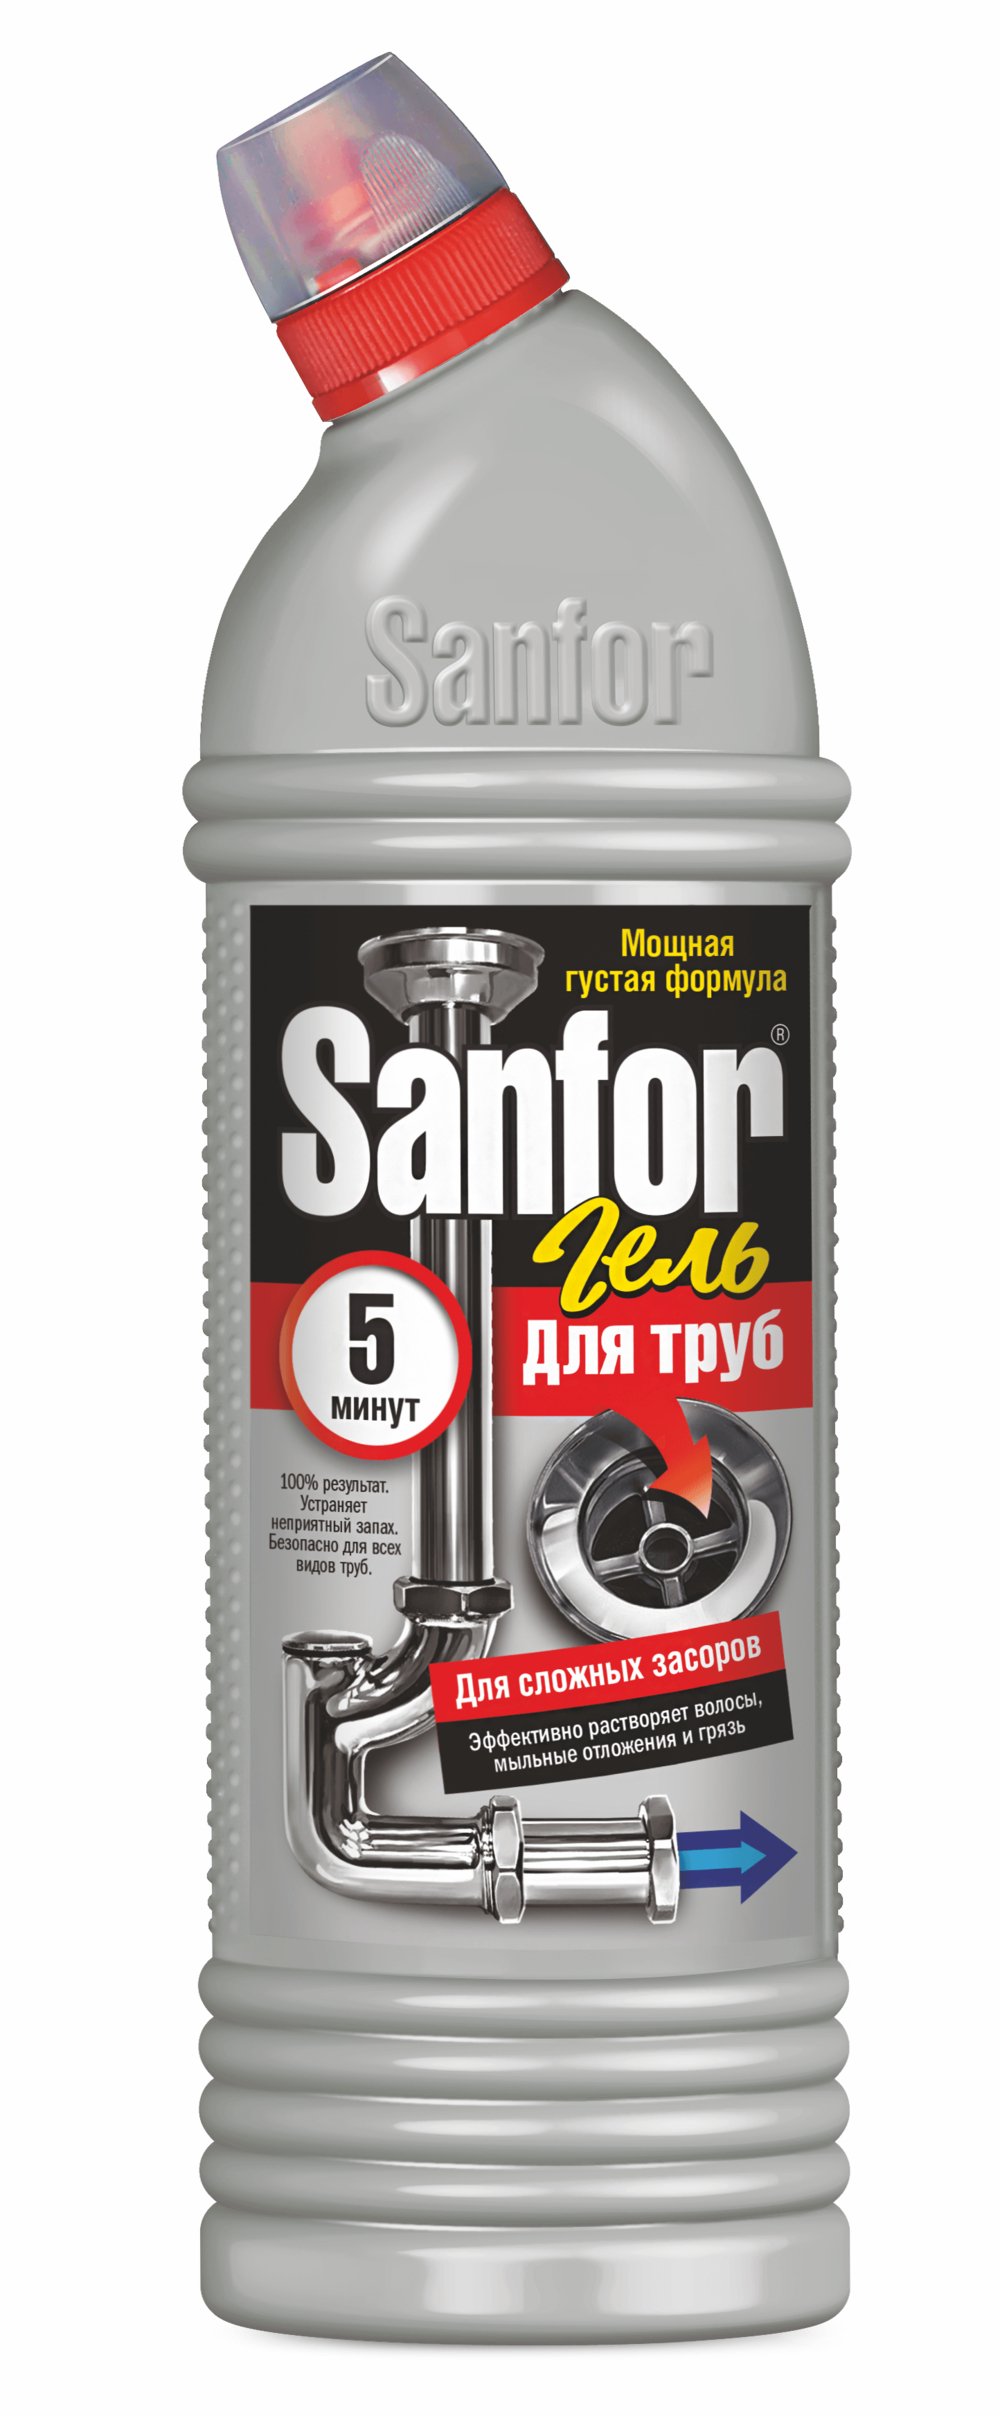 SANFOR средство для прочистки канализационных труб, 5 мин, 1000 мл Sanfor арт.1957 оптом_фото1